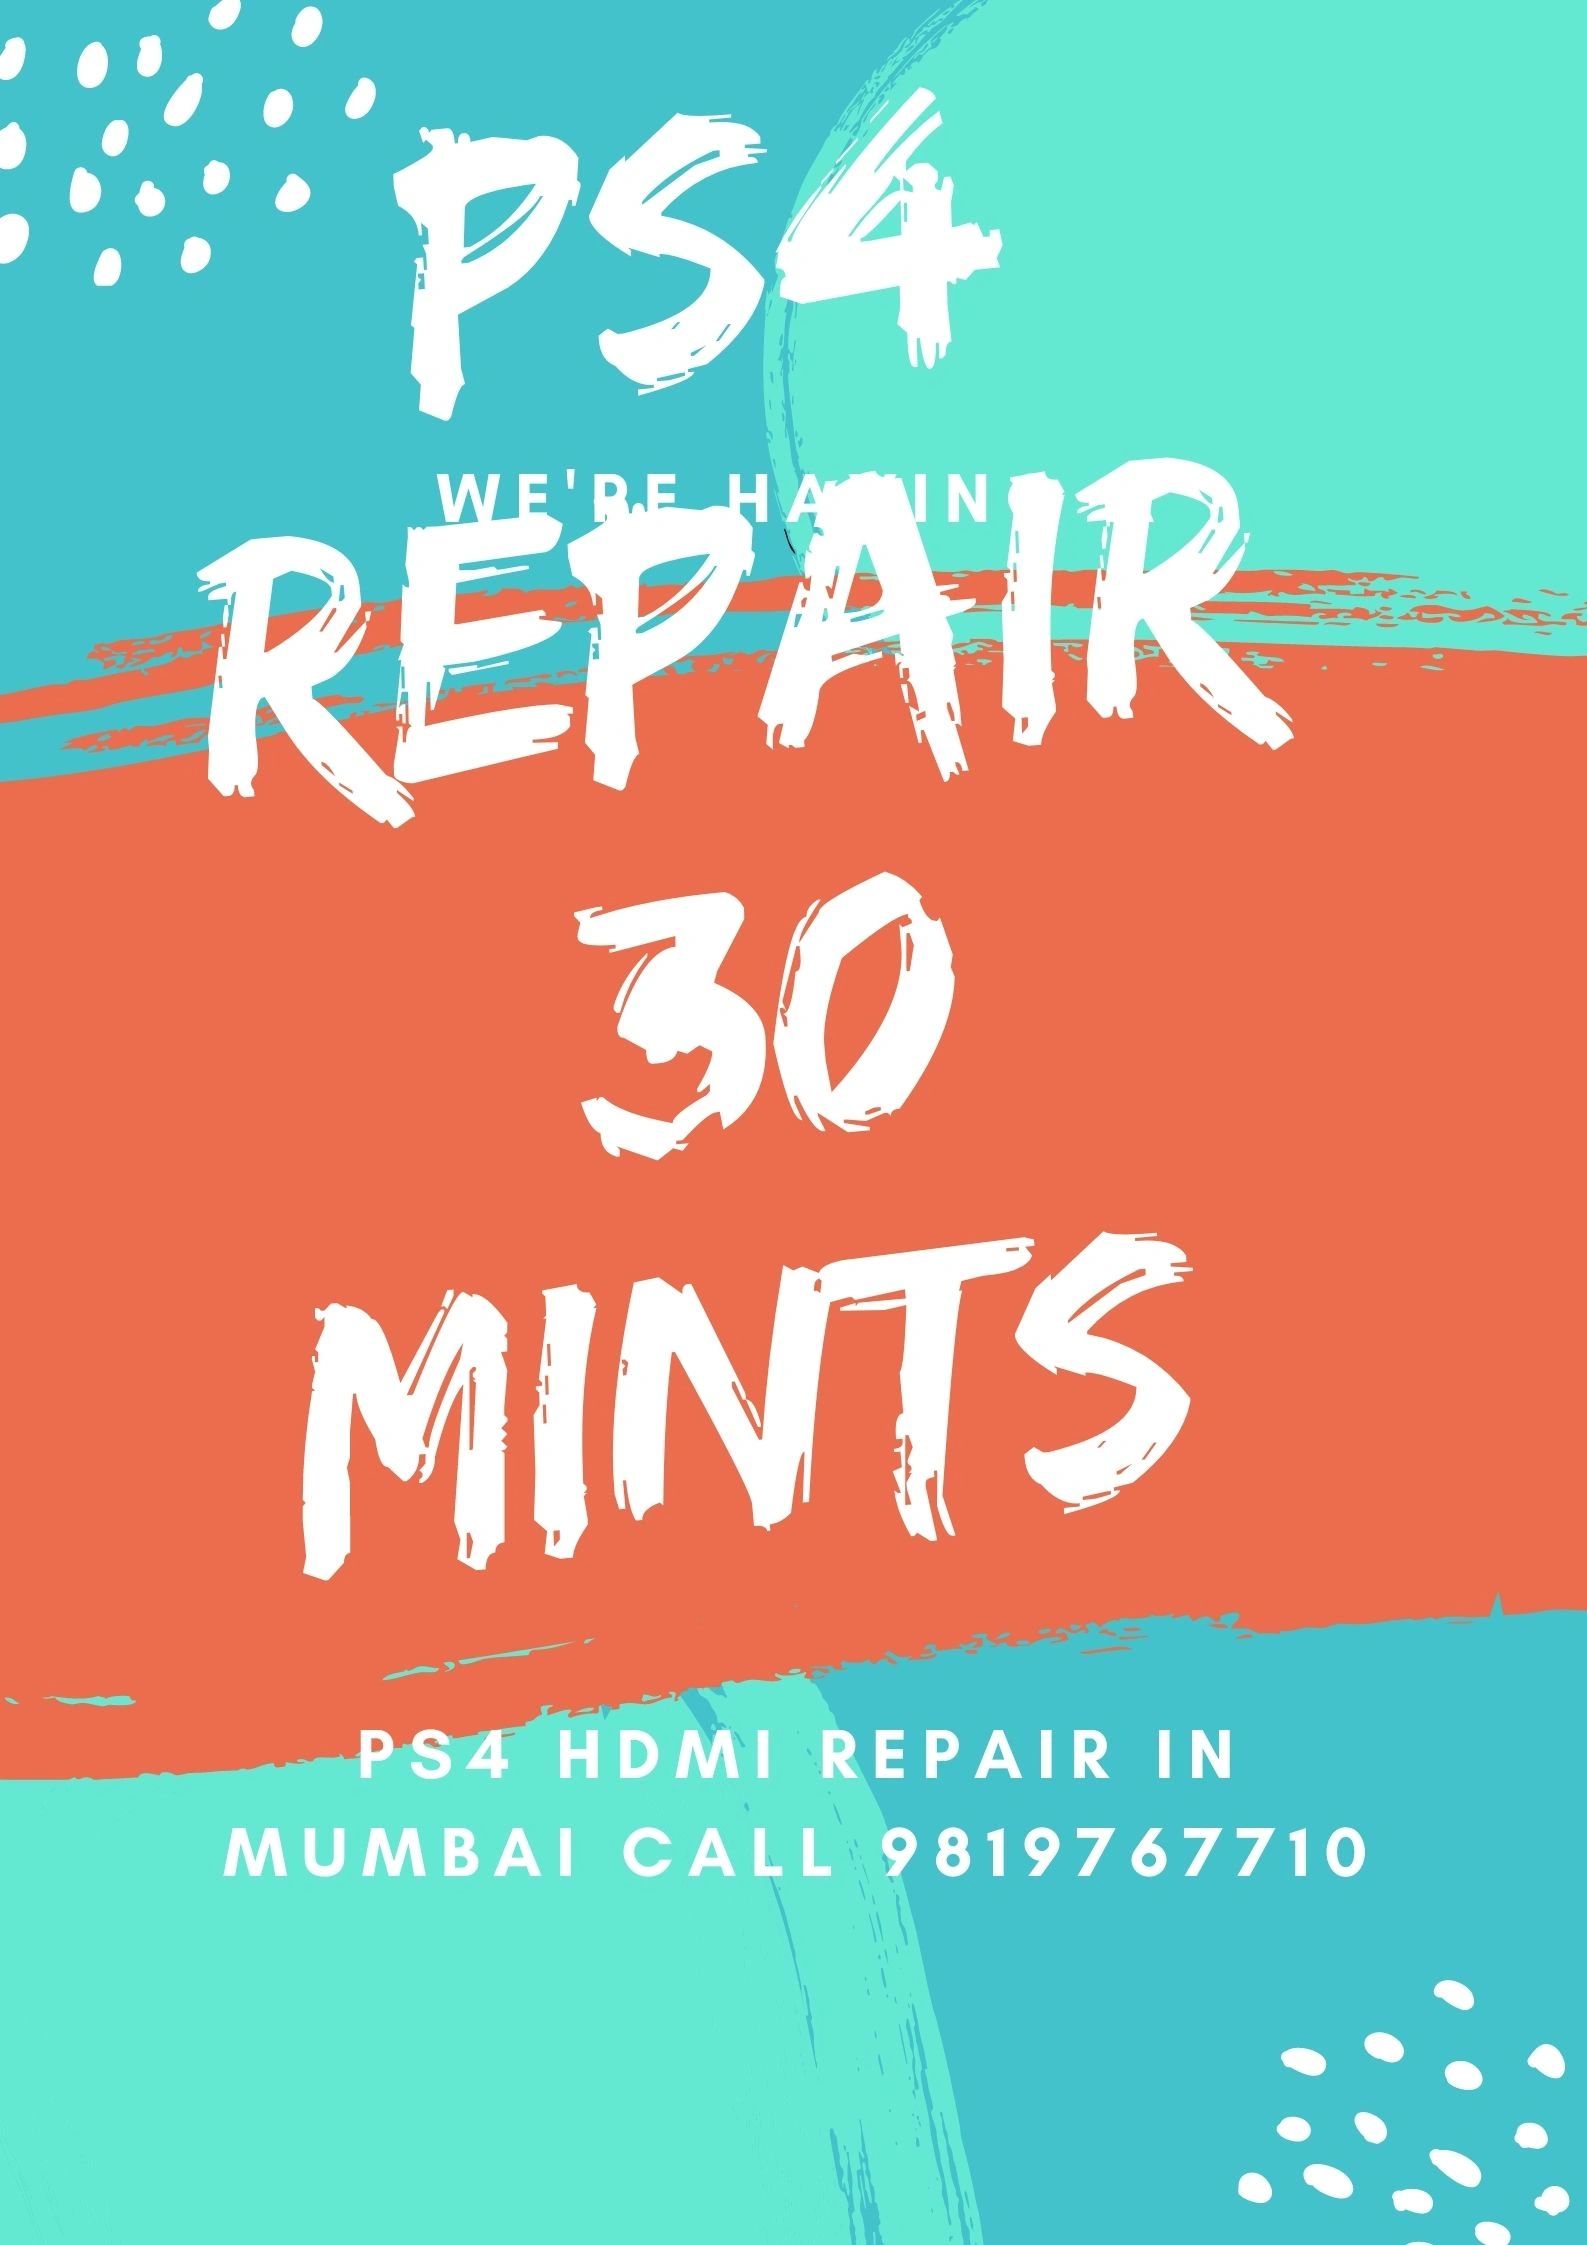 ps4 repair in mumbai